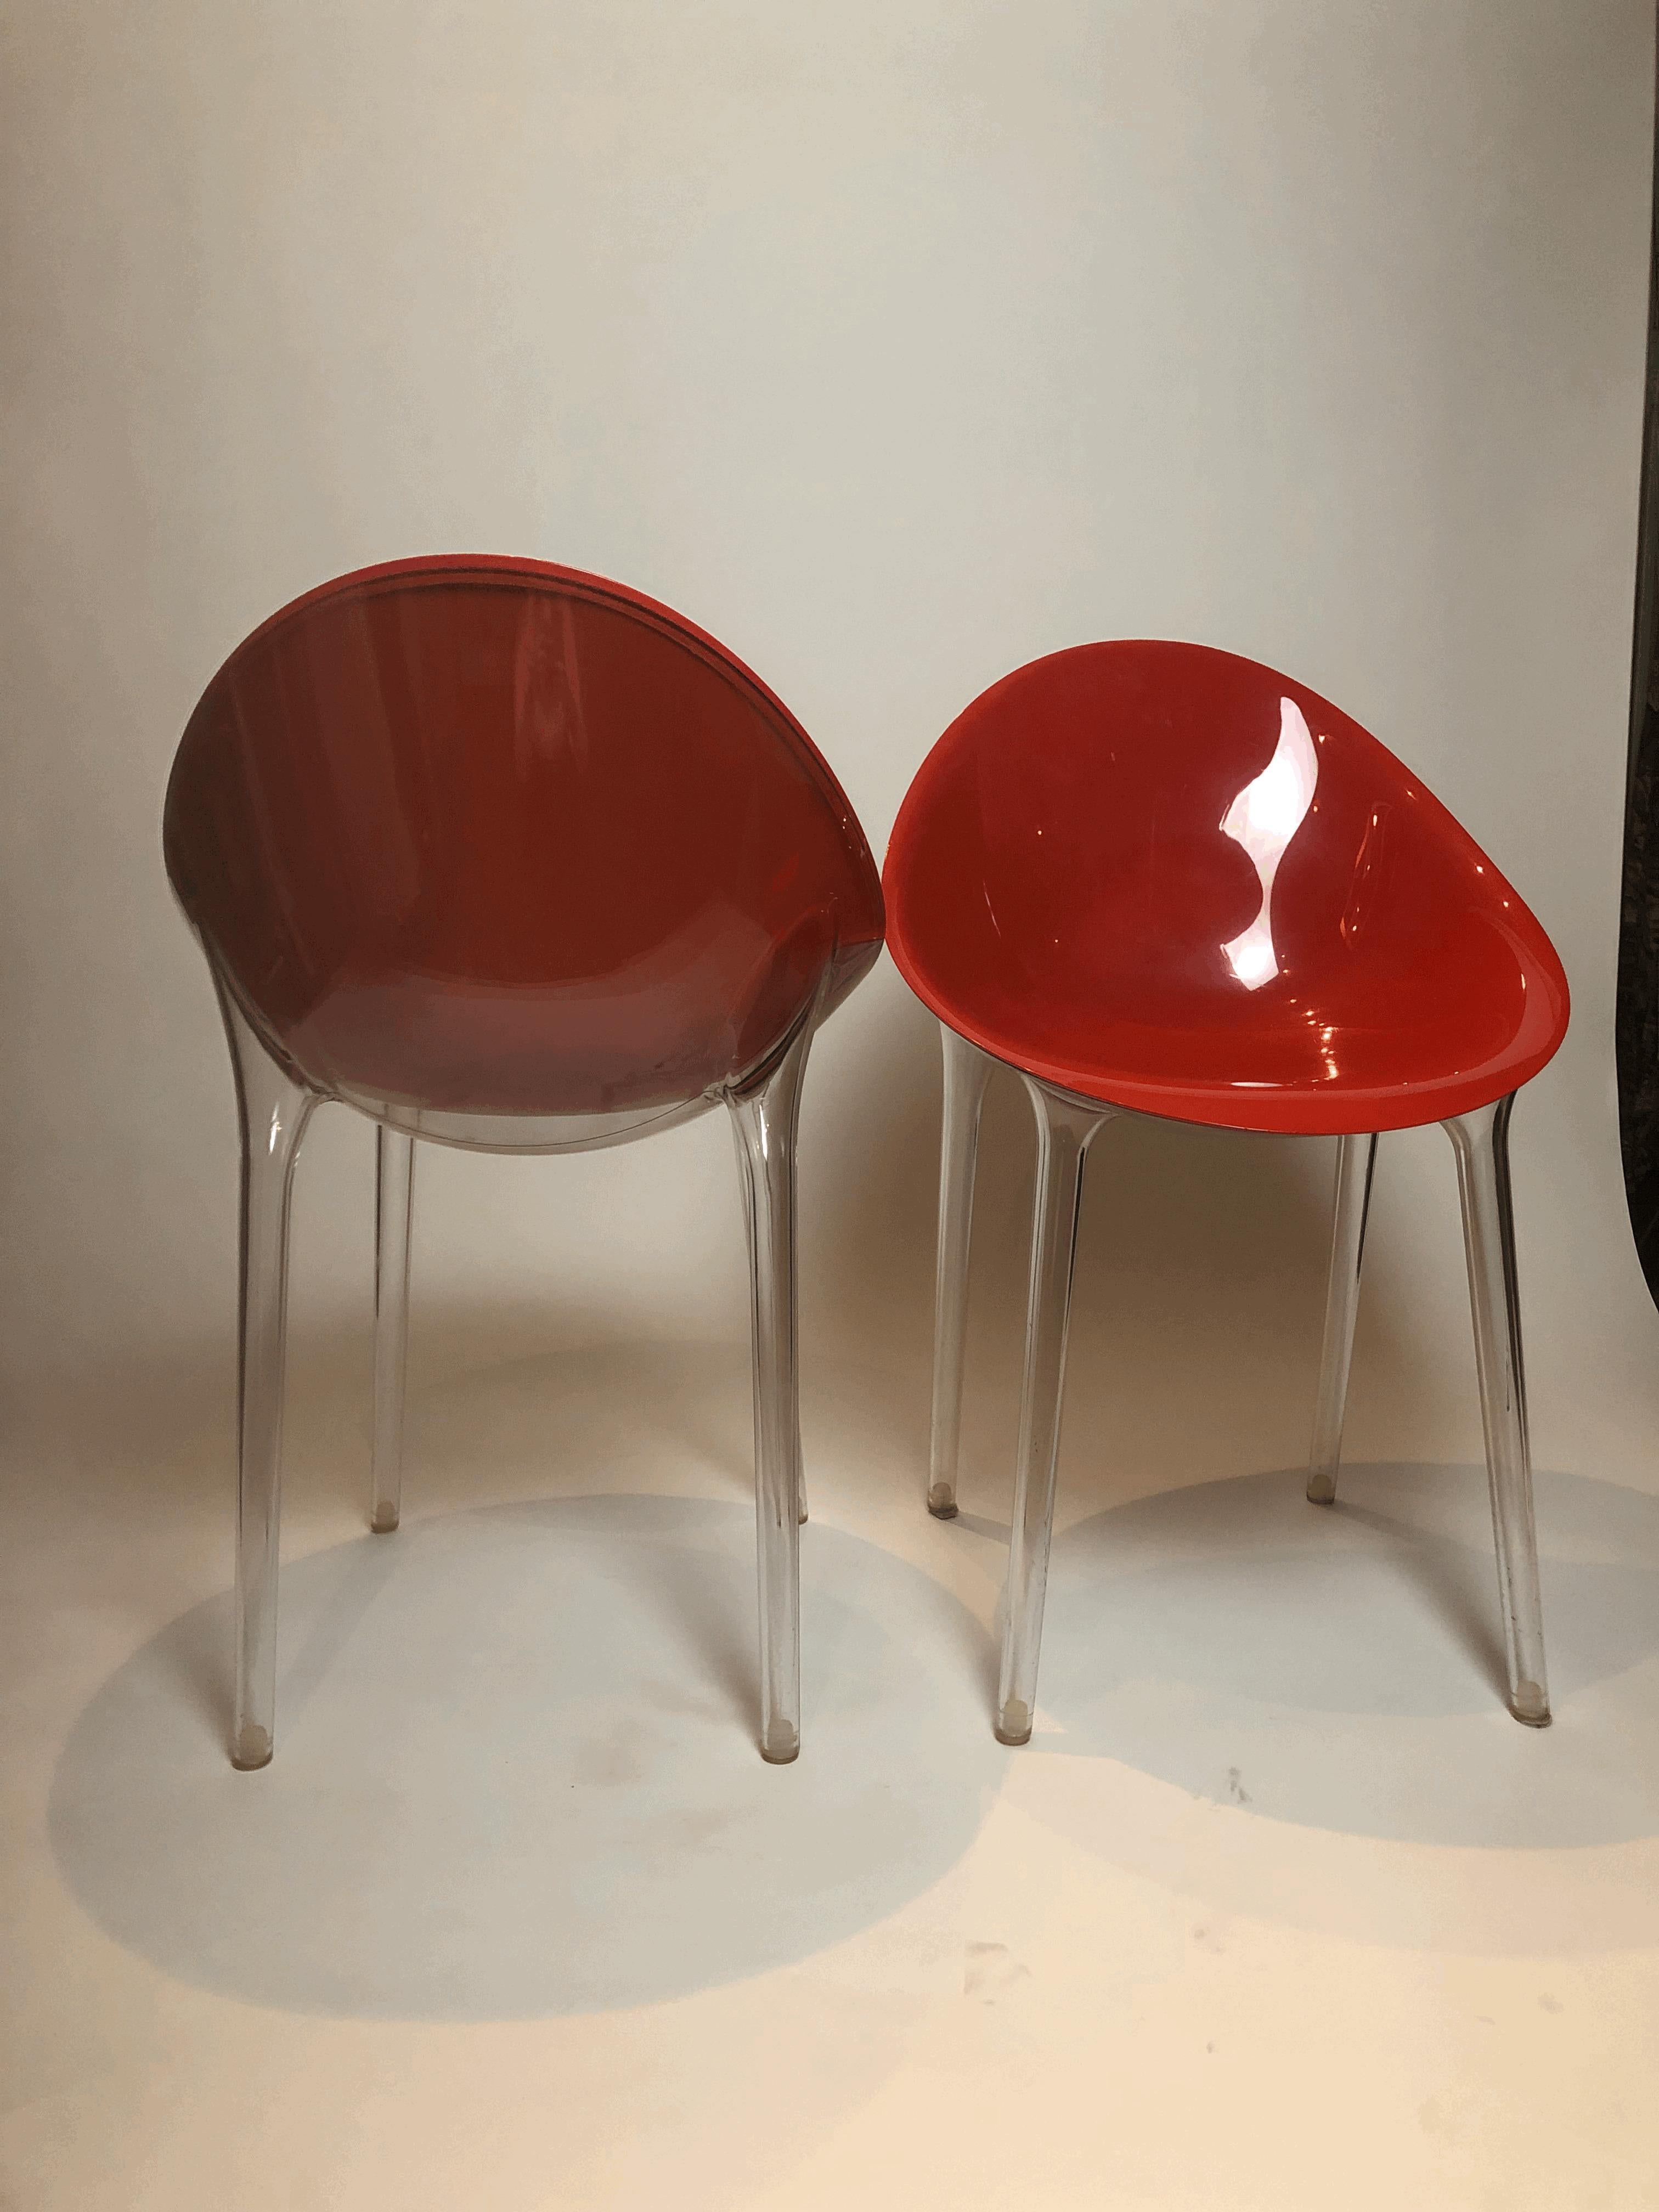 Die Collaboration zwischen Philippe Starck und Kartell in den 1990er Jahren führte zu einer Reihe von revolutionären Liegen, vor allem aus rotem und transparentem Polycarbonat. Ces chaises ont rapidement conquis le marché mondial, avec plus de 1